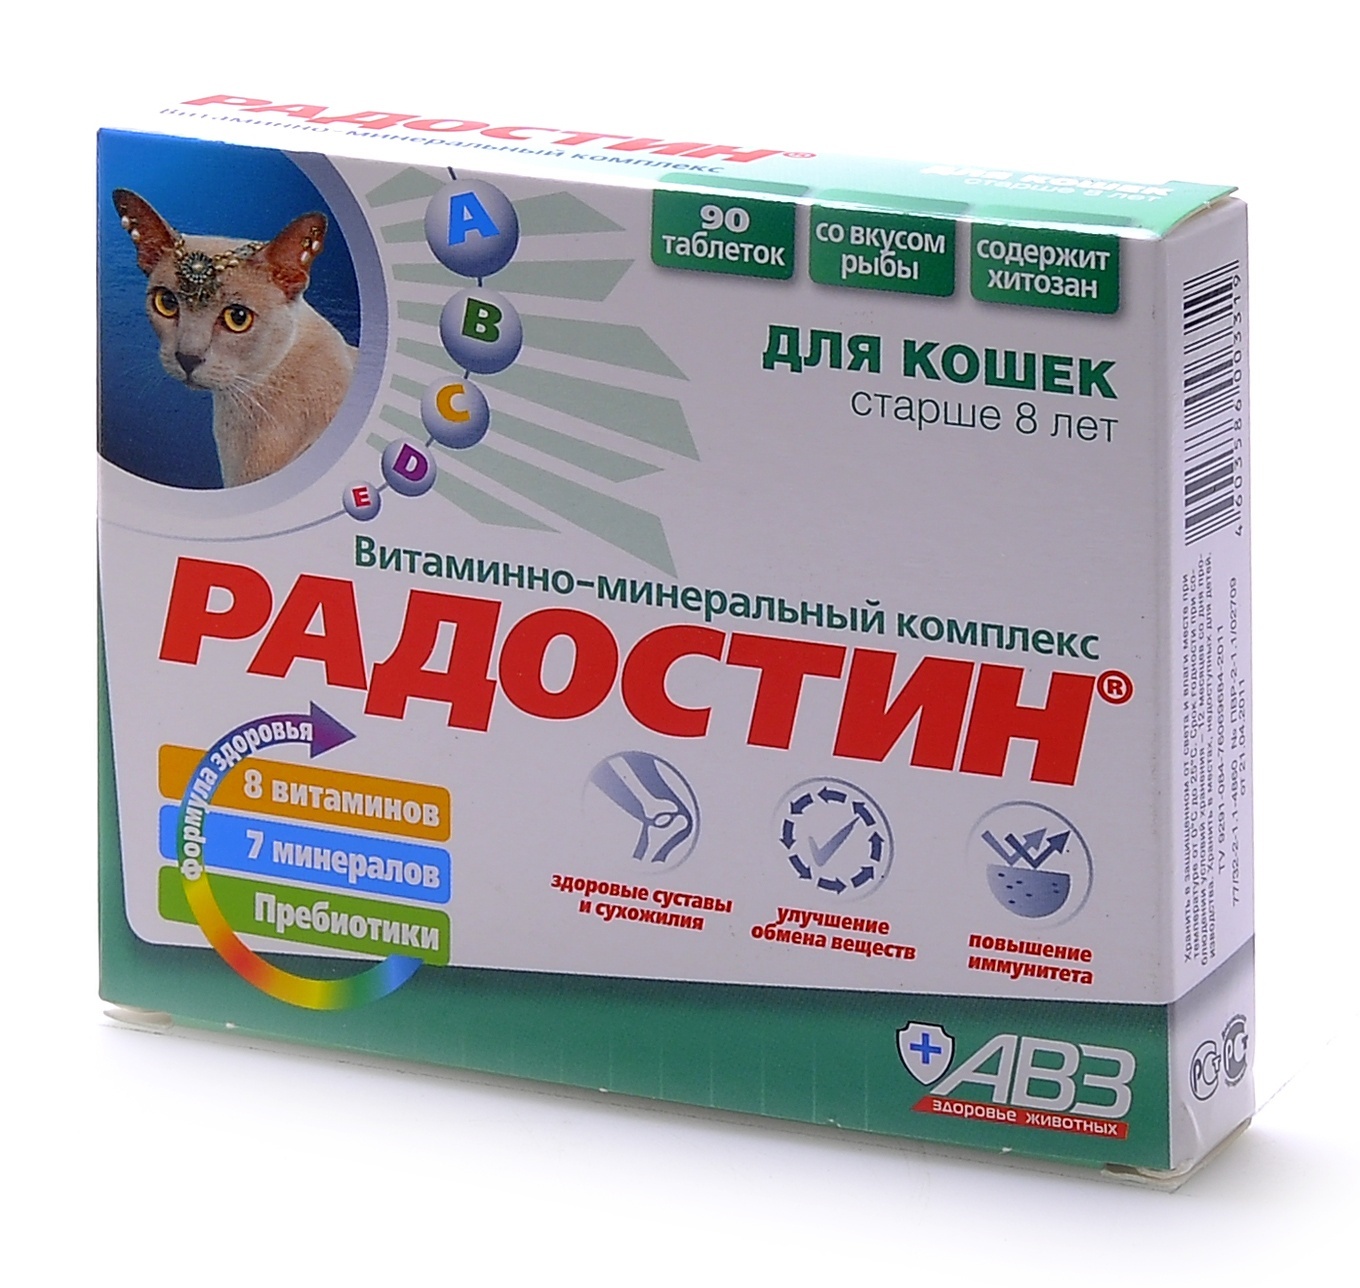 Агроветзащита Агроветзащита Радостин добавка витаминно-минеральная для кошек старше 8 лет, 90 табл. (62 г)